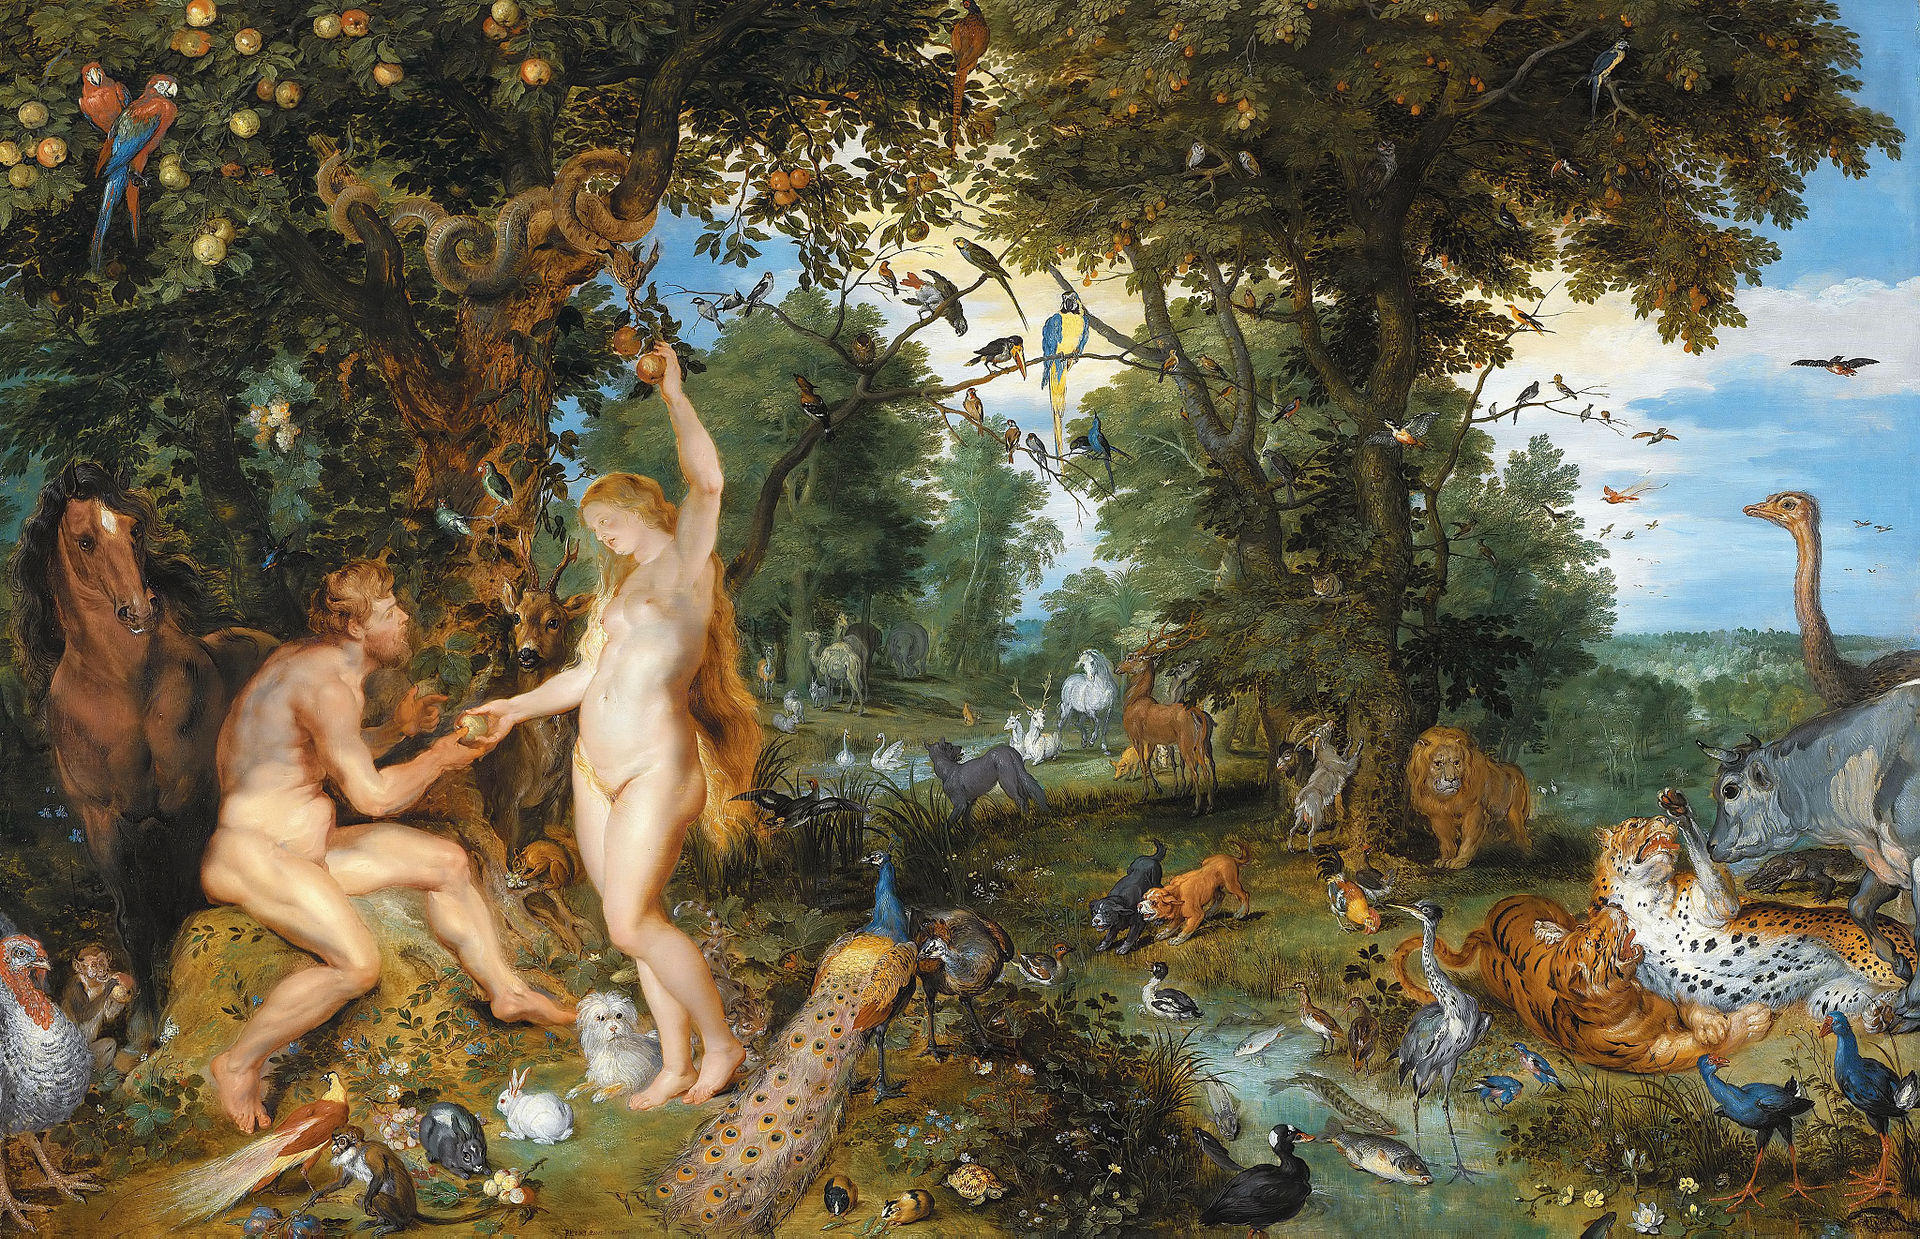 Jan_Brueghel_de_Oude_en_Peter_Paul_Rubens_-_Het_aards_paradijs_met_de_zondeval_van_Adam_en_Eva